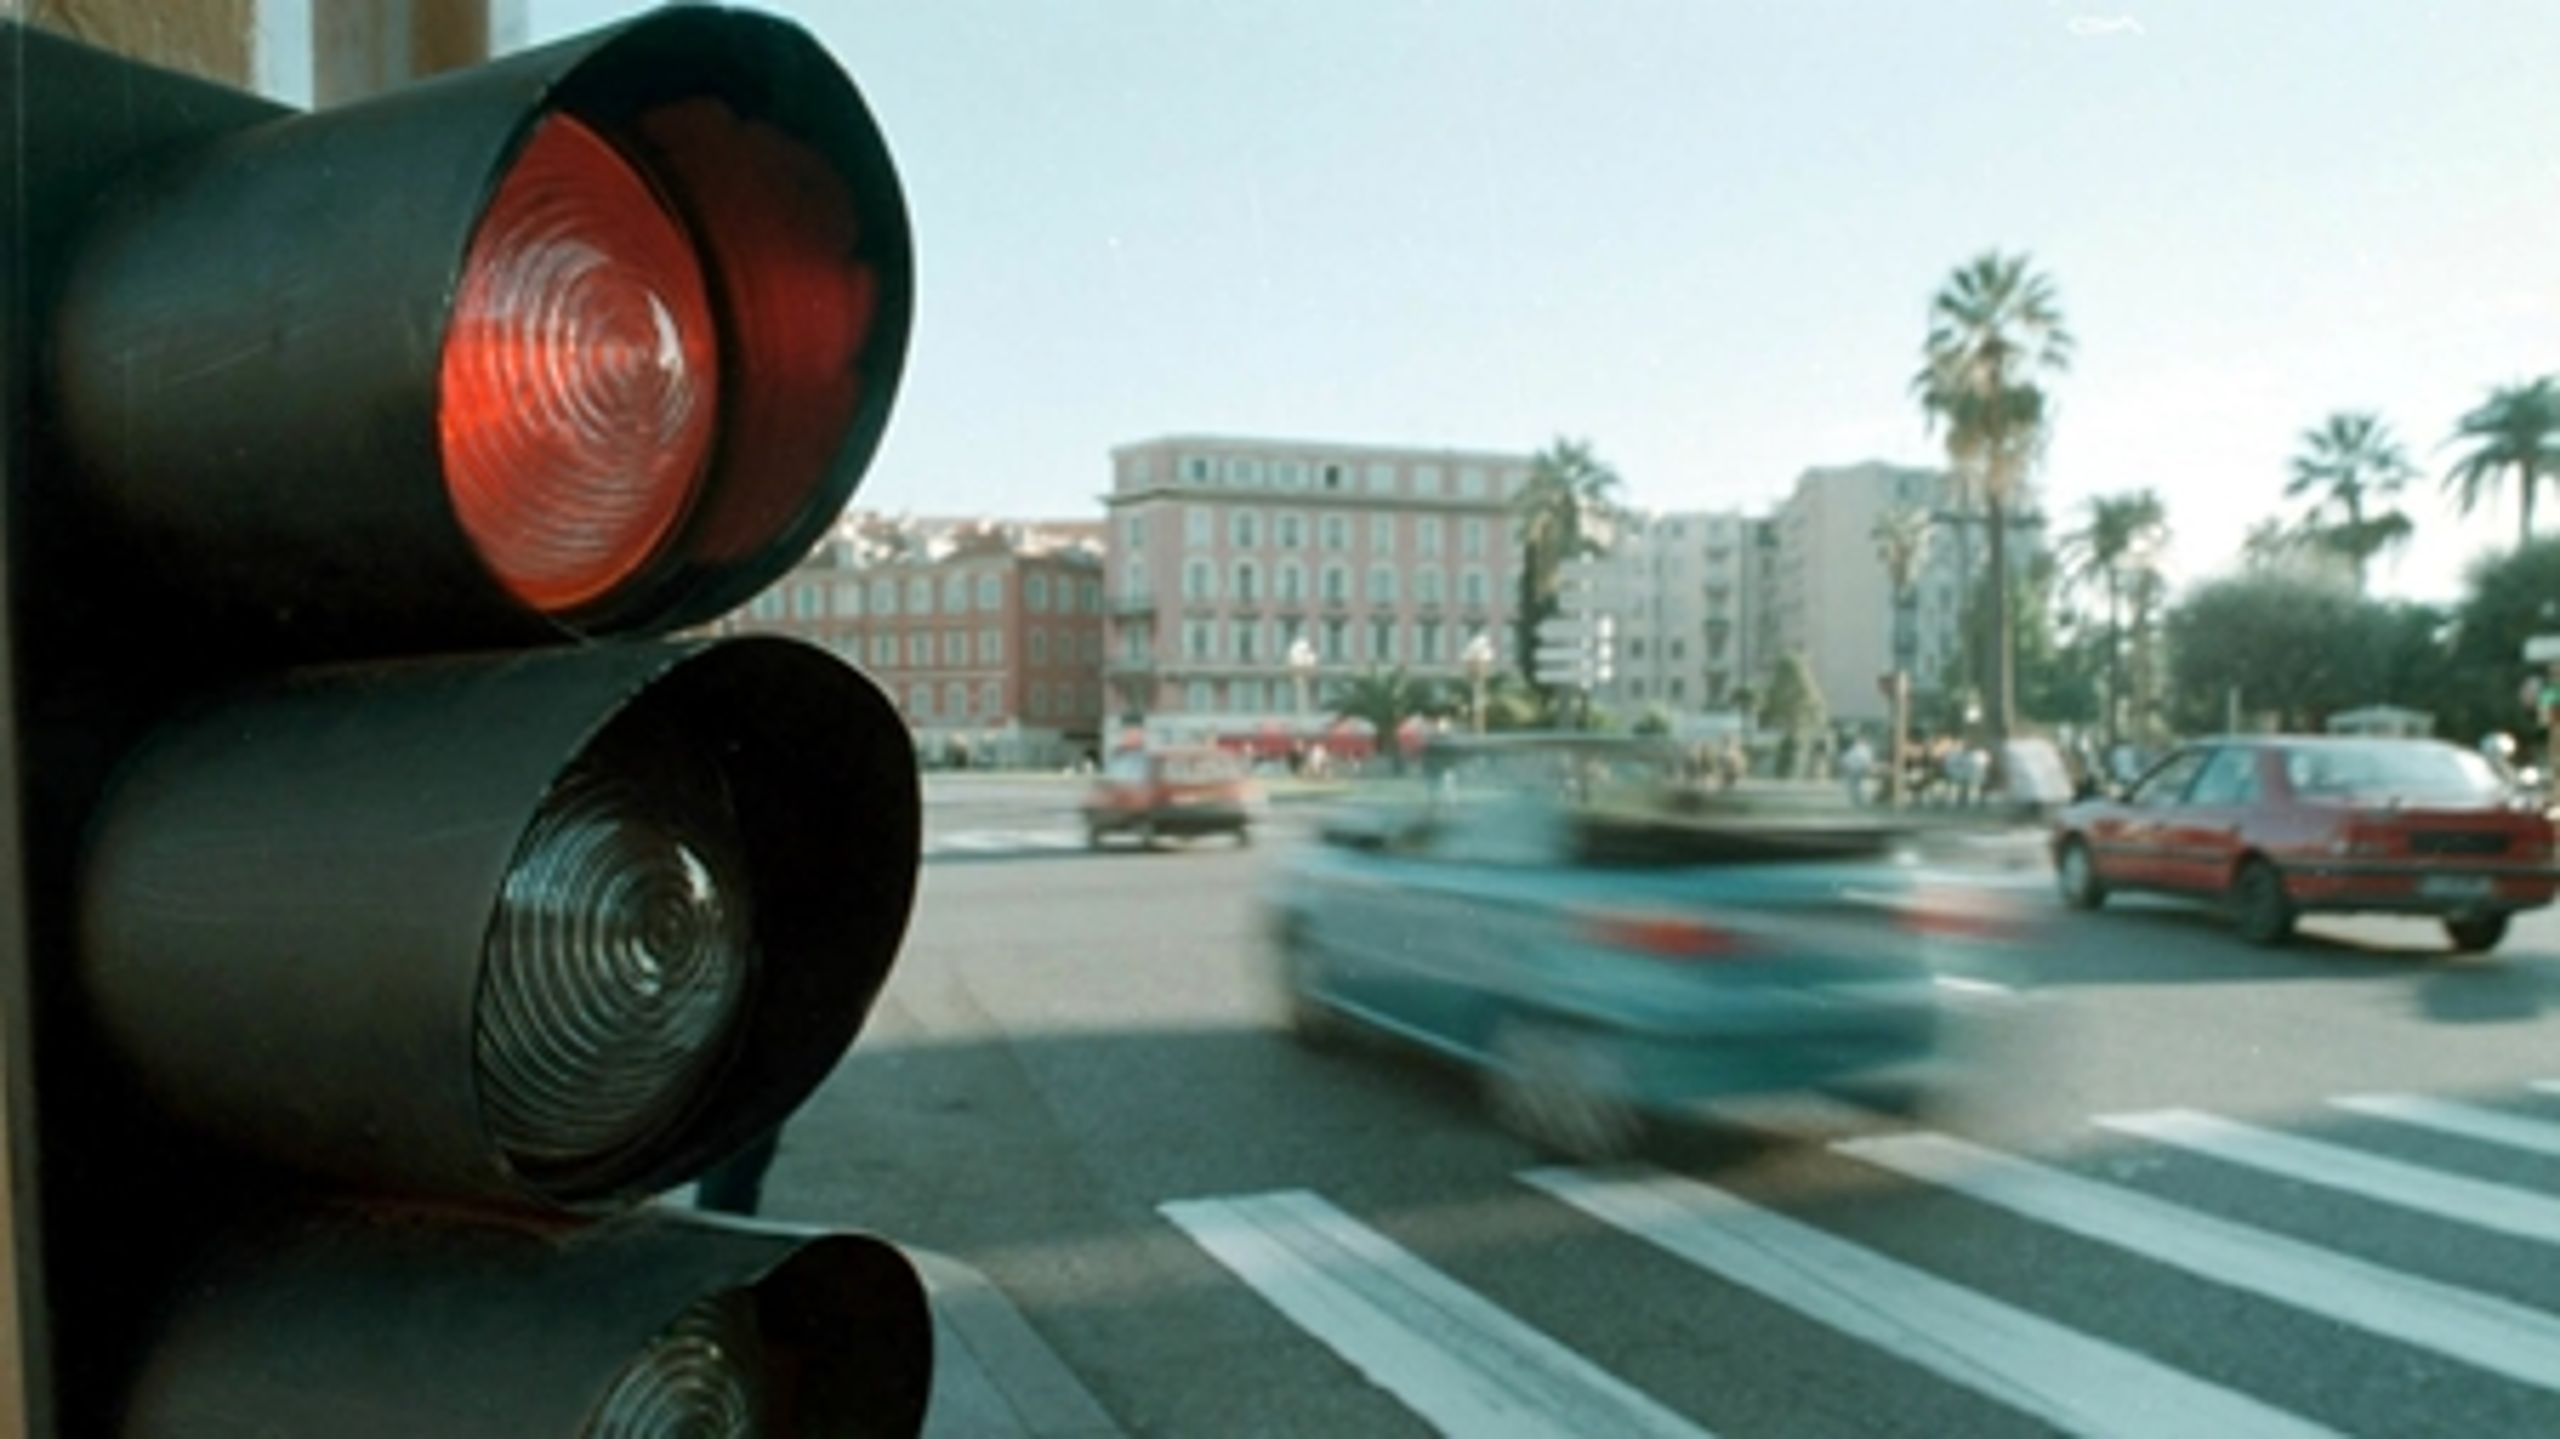 Skal bilister have lov til at køre til højre ved rødt lys? Ja, mener Dansk Erhverv.